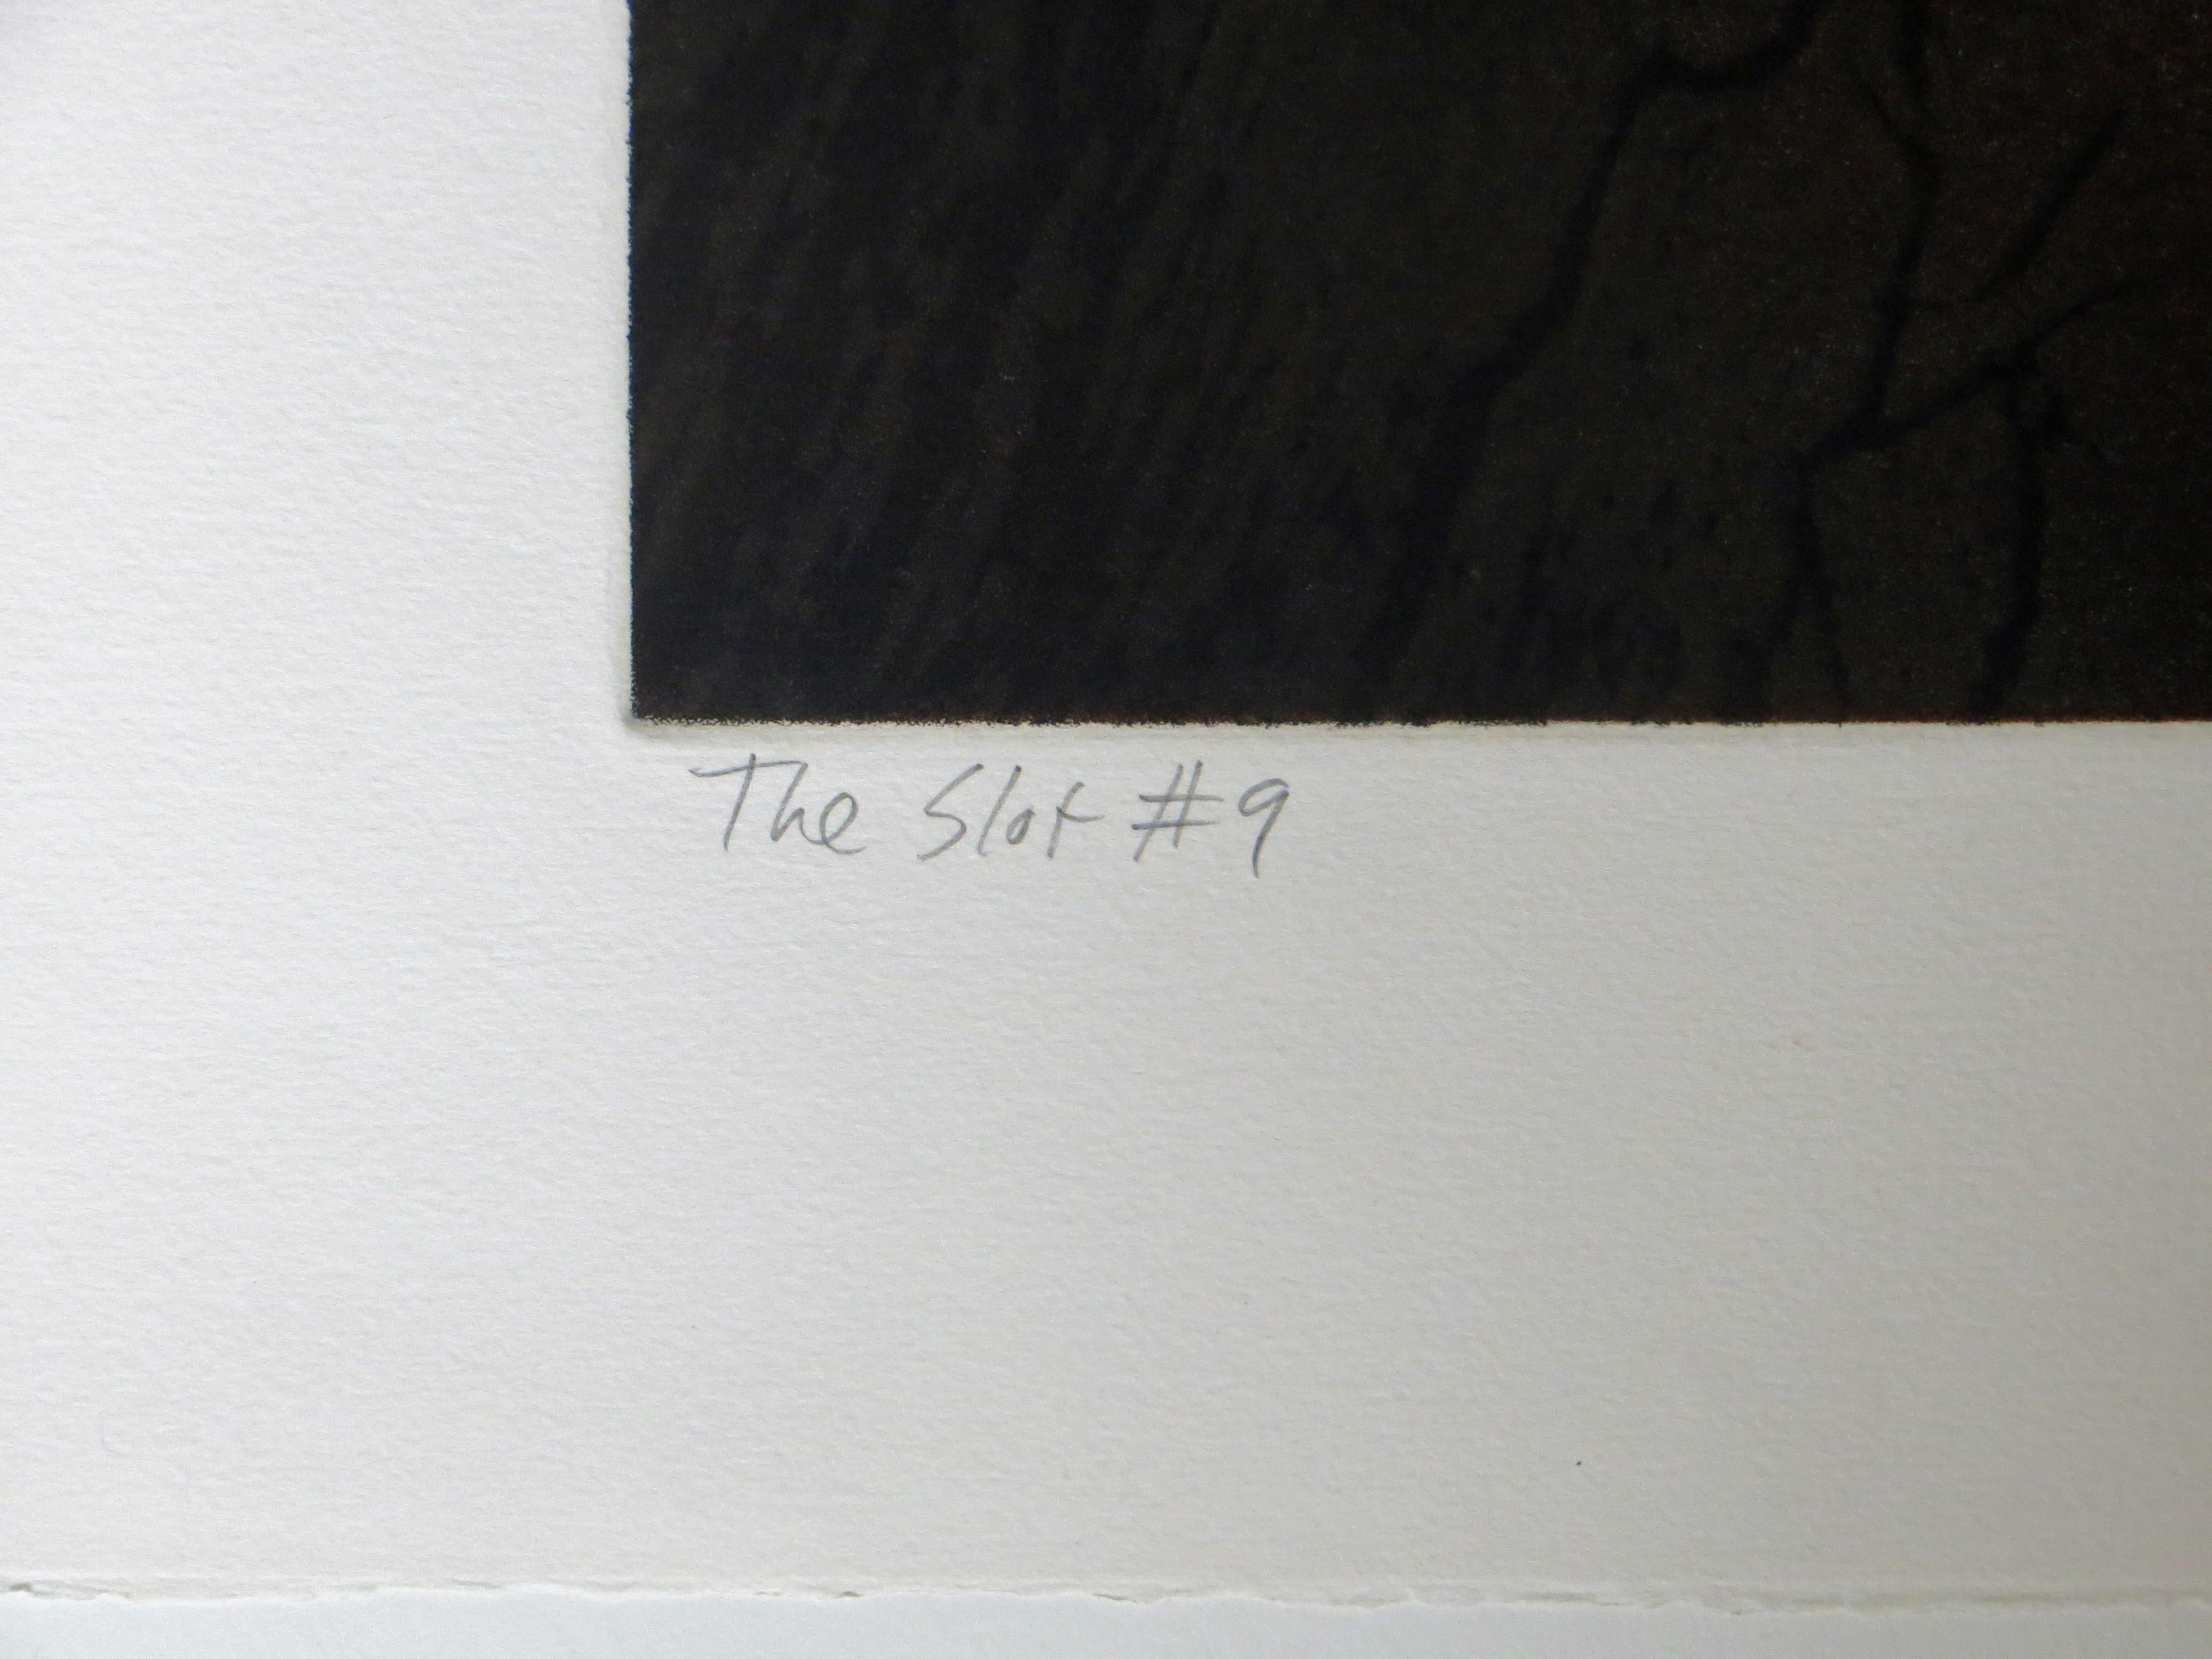 Artiste : Stephen McMillan - Américain (1949- )
Titre : The Slot #9
Année : 1981
Médium : gravure à l'eau-forte à 3 plaques
Dimensions de la vue : 36 x 24